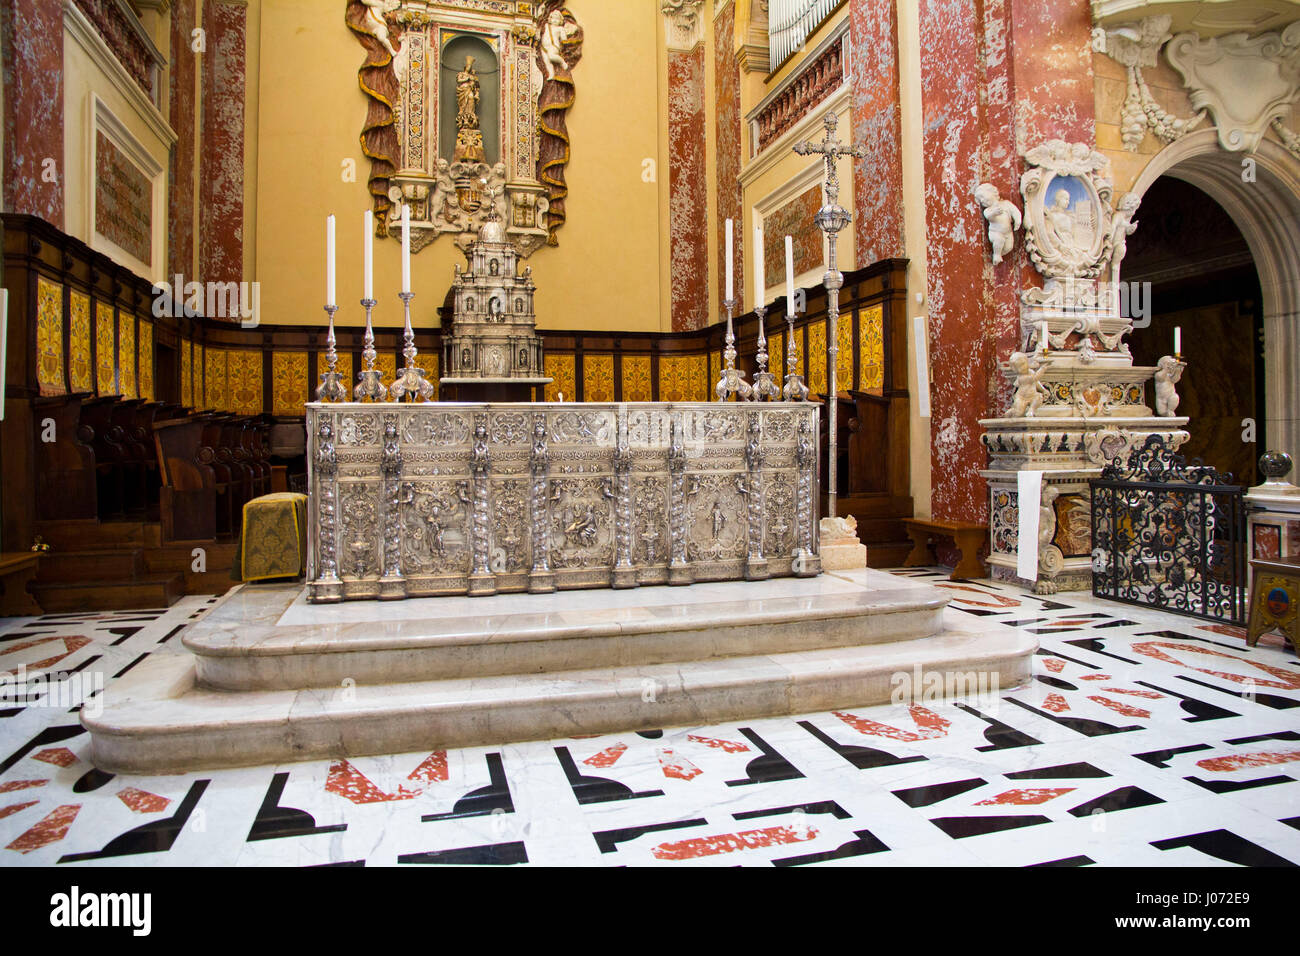 Das aufwändige innere Cagliaris Kathedrale zeigt künstlerische und historische Schätze aus dem 12. und 13. Jahrhundert.  Cagliari, Sardinien. Stockfoto